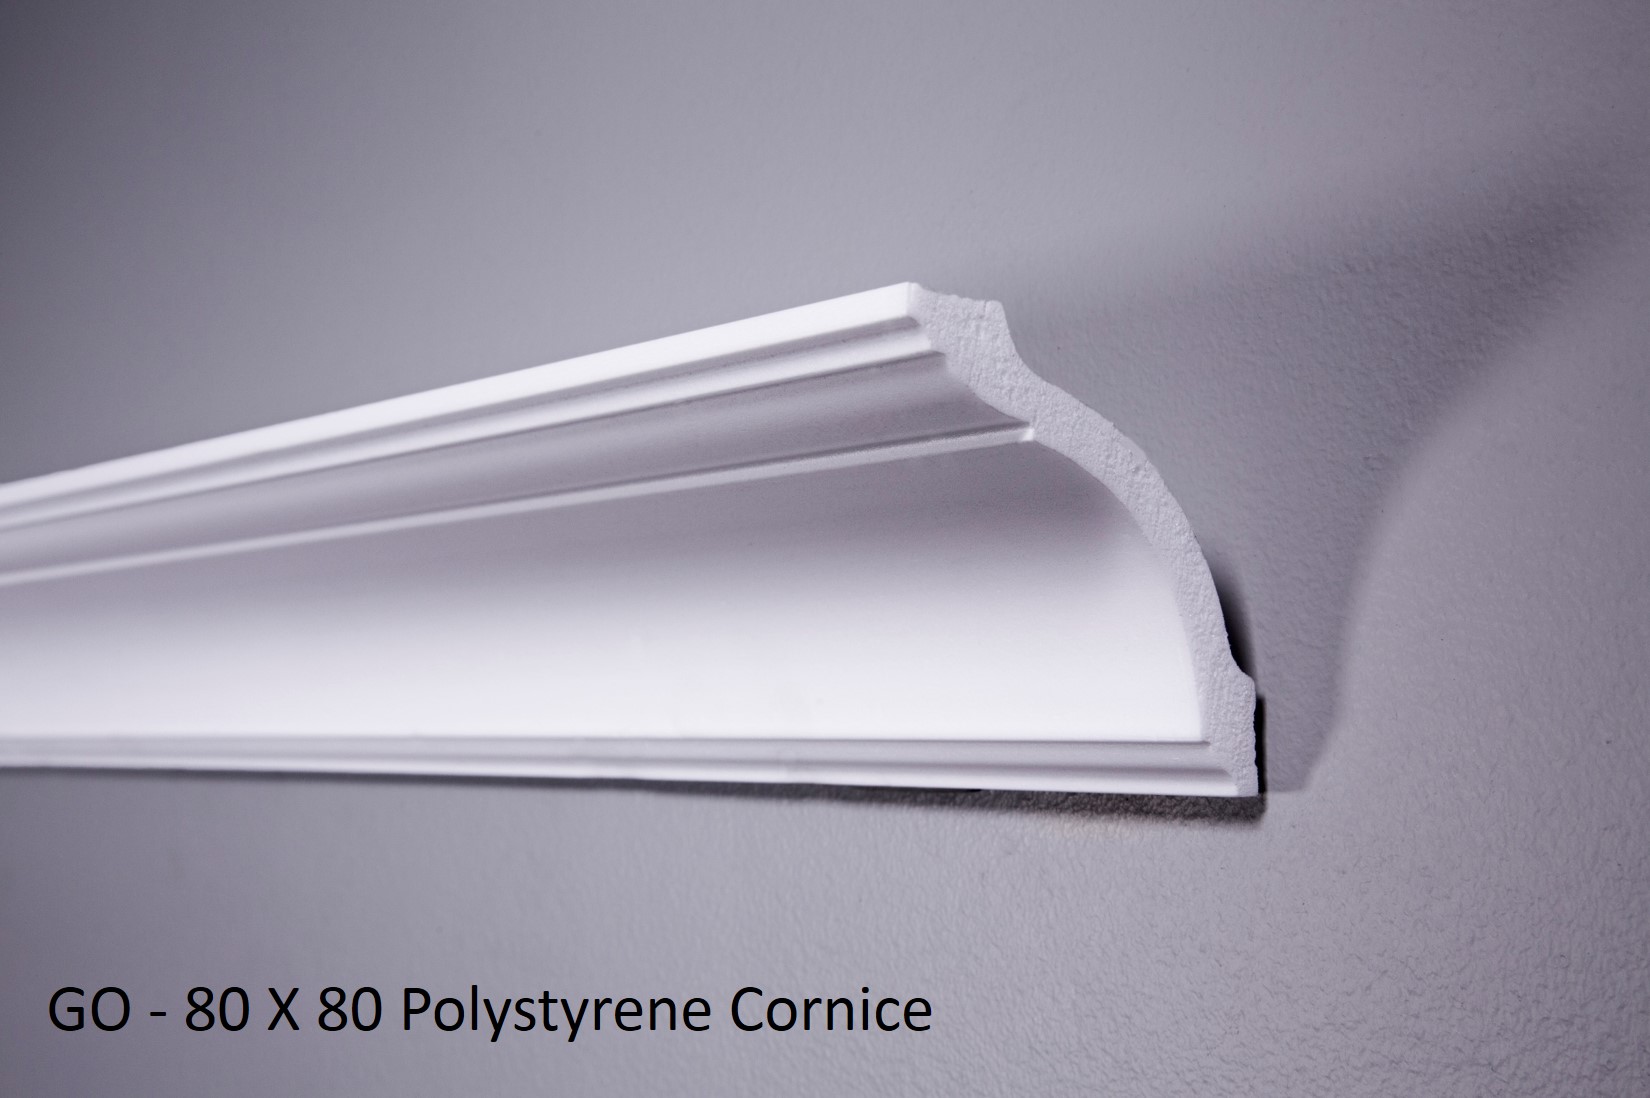 GO - 80 X 80 Polystyrene Cornice